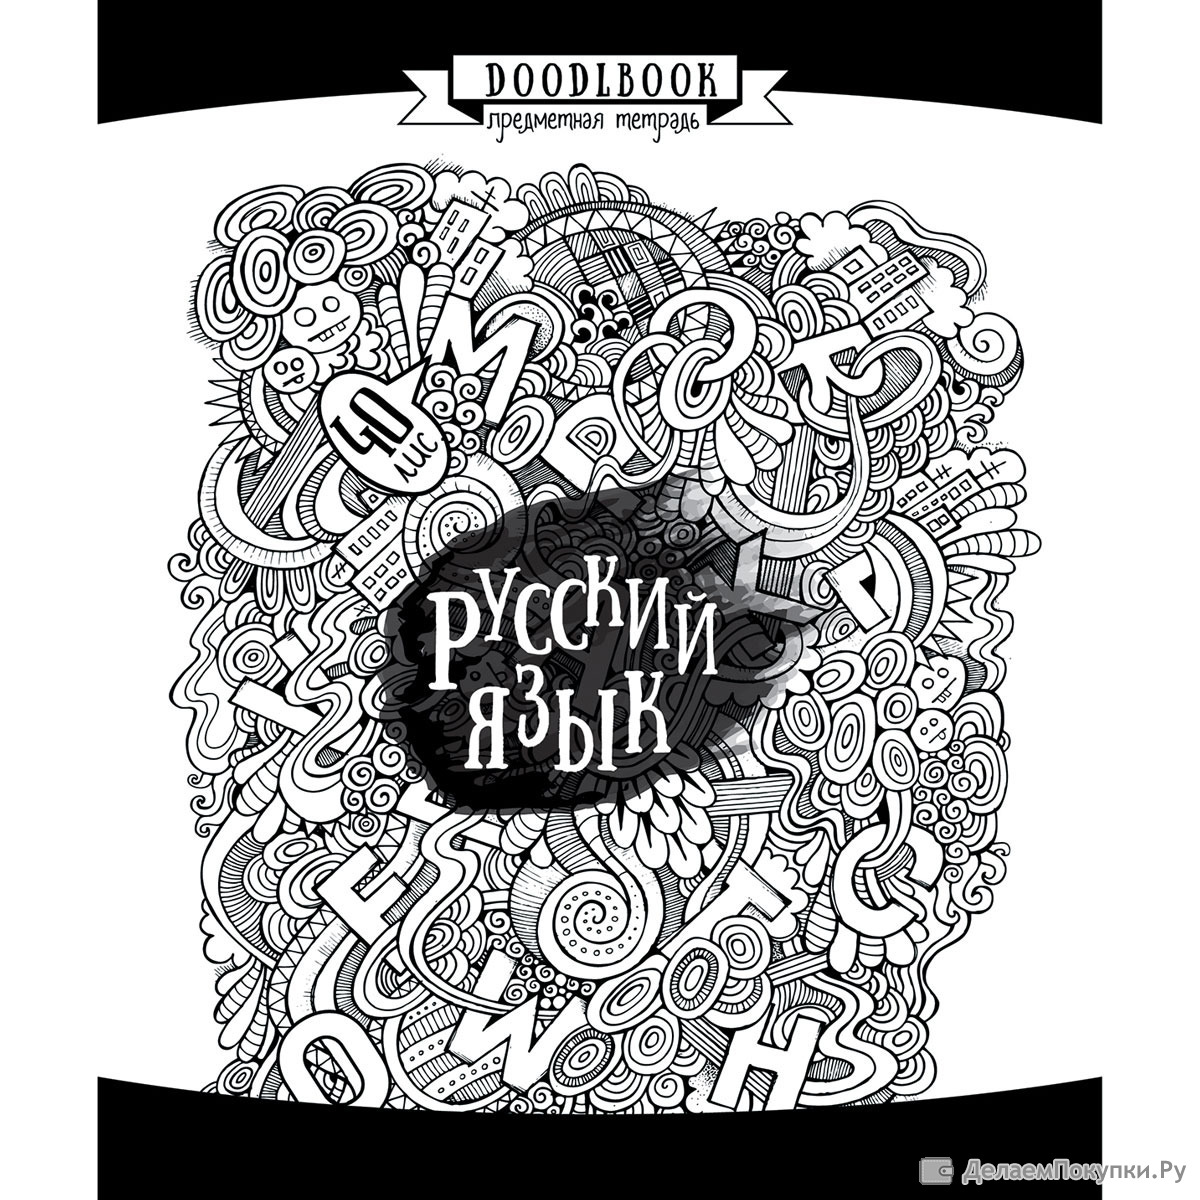 Обложка для тетради по русскому